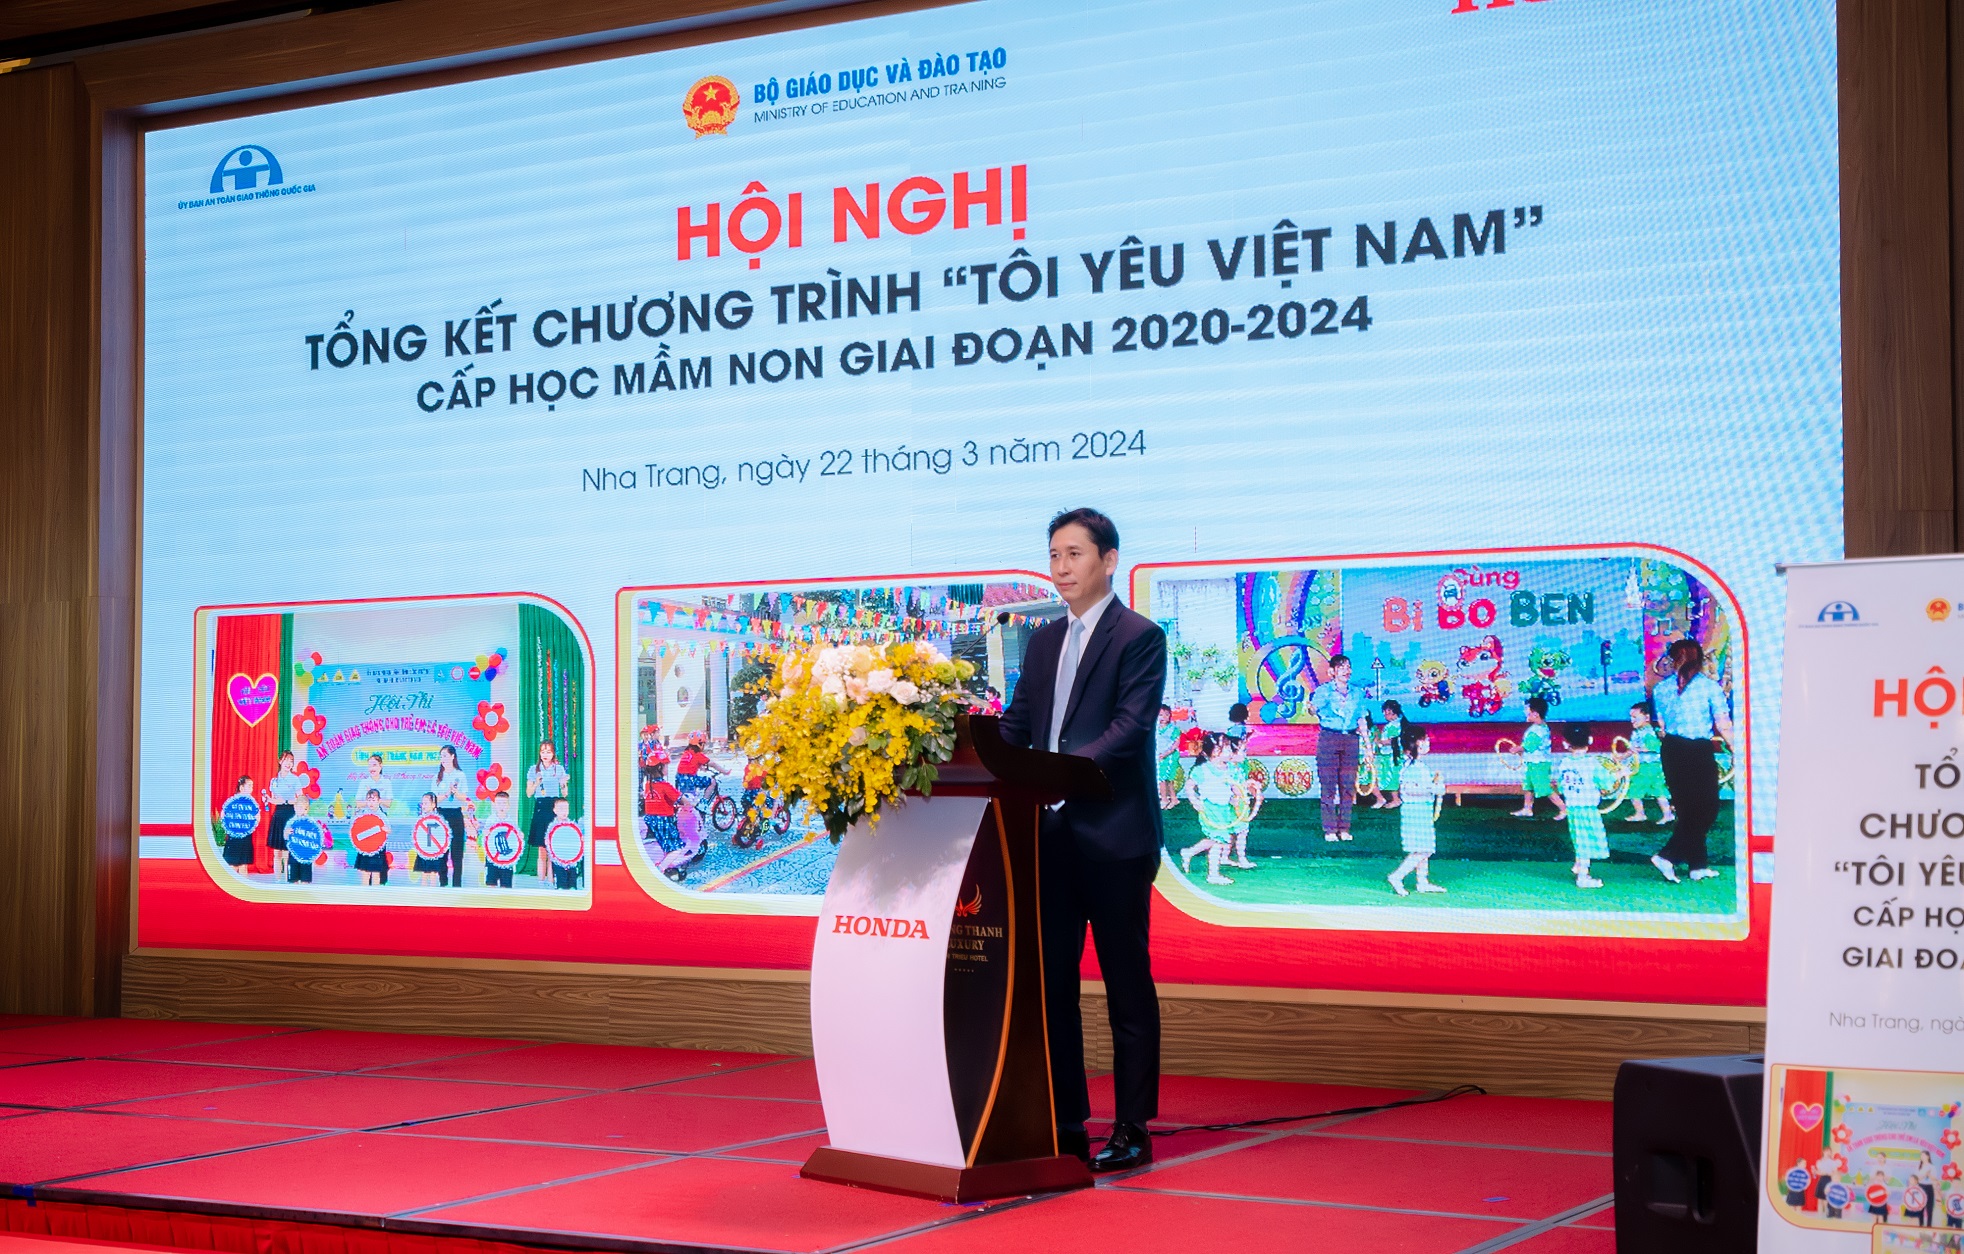 Honda Việt Nam tổ chức Hội nghị tổng kết chương trình “Tôi yêu Việt Nam” trong cấp học mầm non giai đoạn 2020-2024 3-ong-motofumi-marutani-pho-tong-giam-doc-cong-ty-honda-viet-nam-phat-bieu-tai-hoi-nghi.JPG